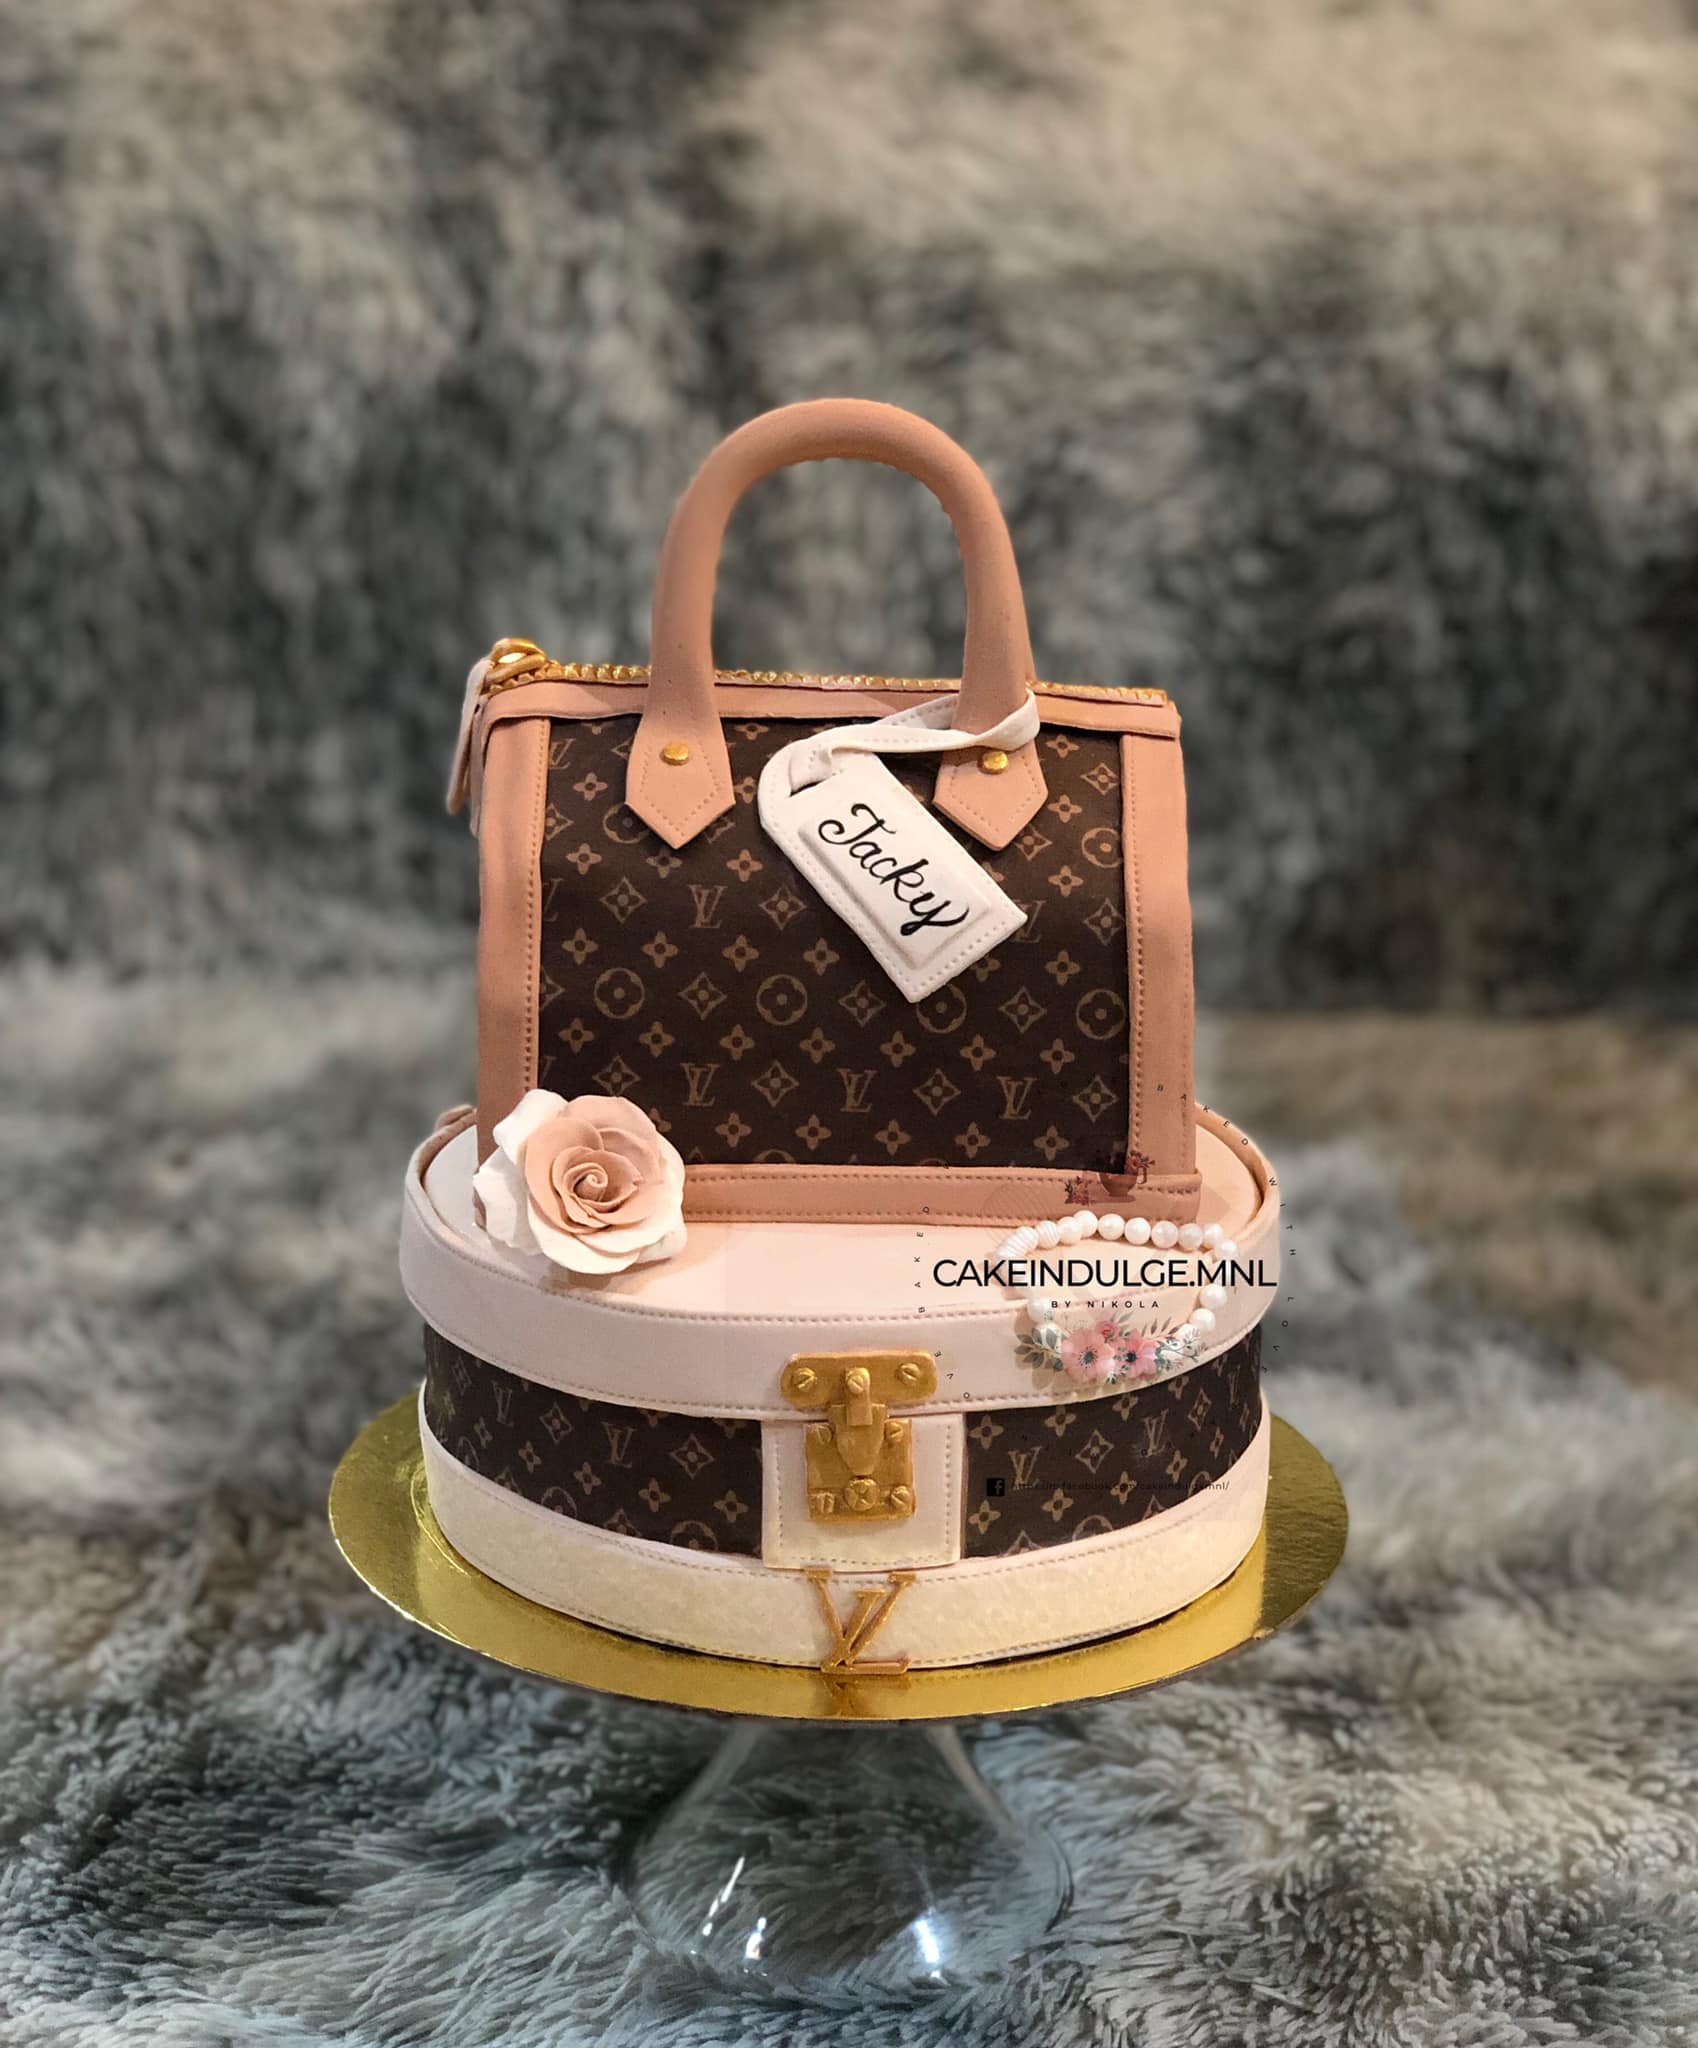 LV bag Designer Bags Cake, A Customize Designer Bags cake